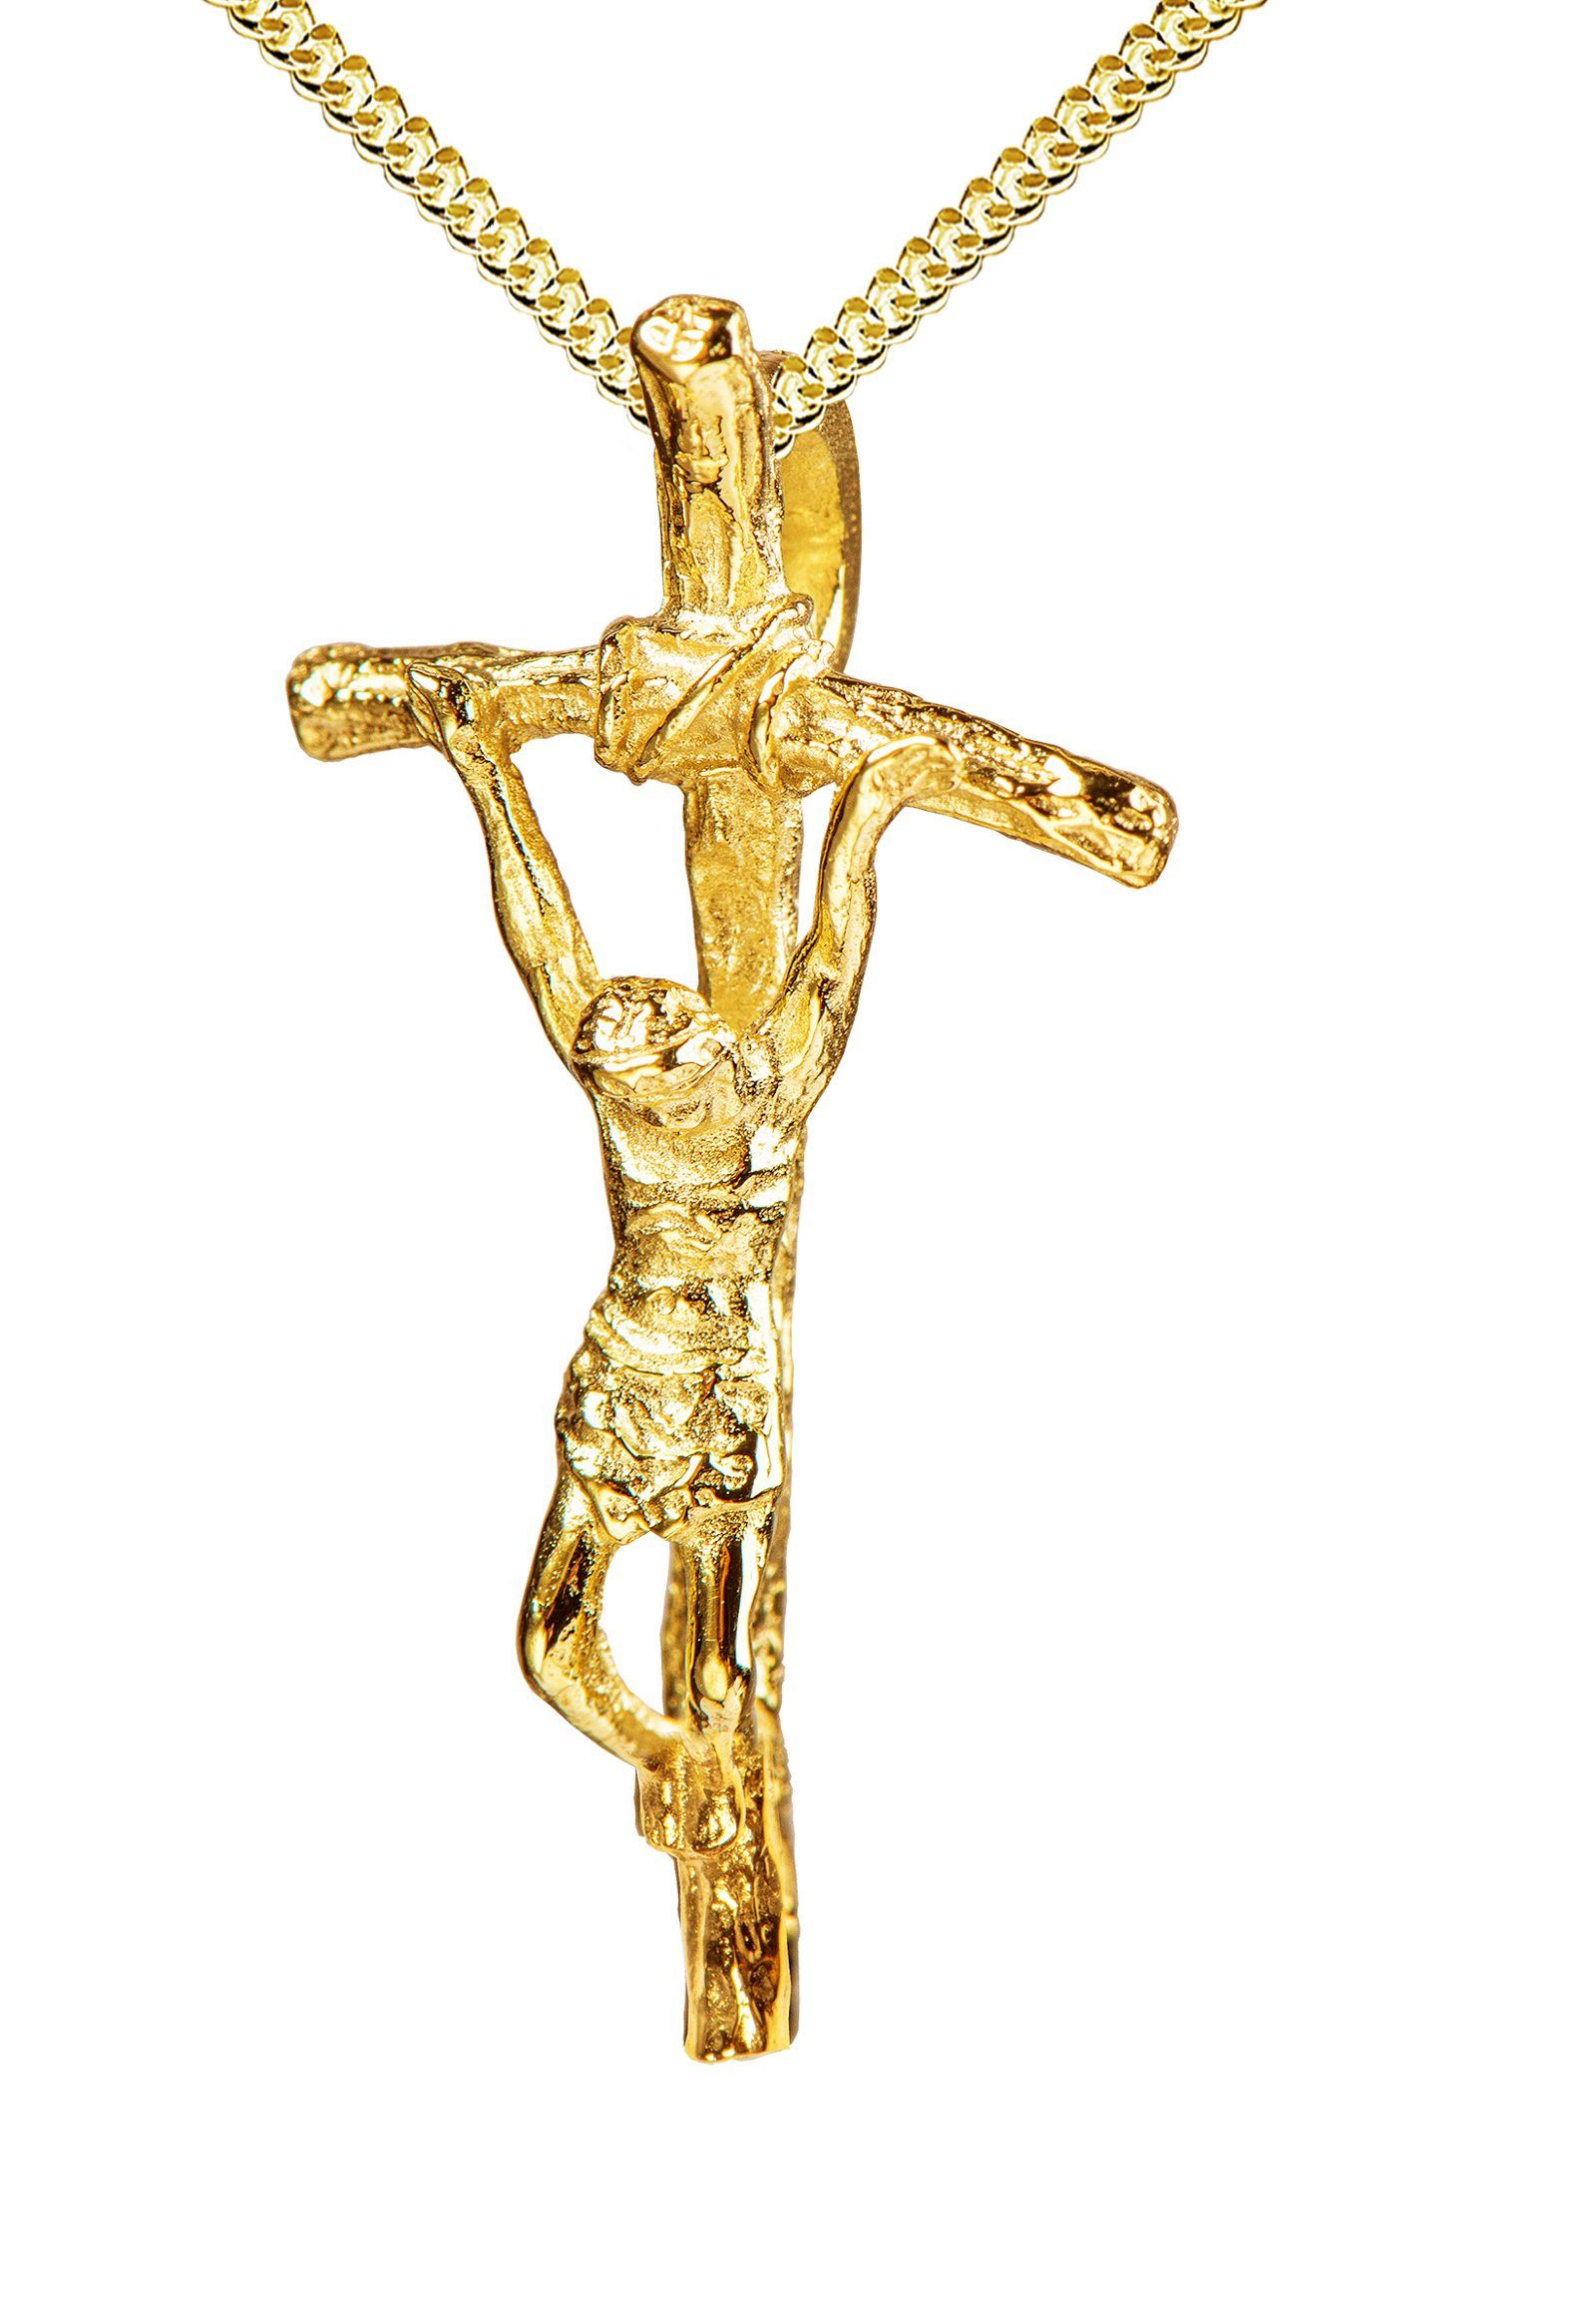 JEVELION Kreuzkette Kruzifix 925 Silber vergoldet - Made in Germany (Silberkreuz vergoldet, für Damen und Herren), Kreuzanhänger mit Panzer-Kette - Länge wählbar 36 - 70 cm.